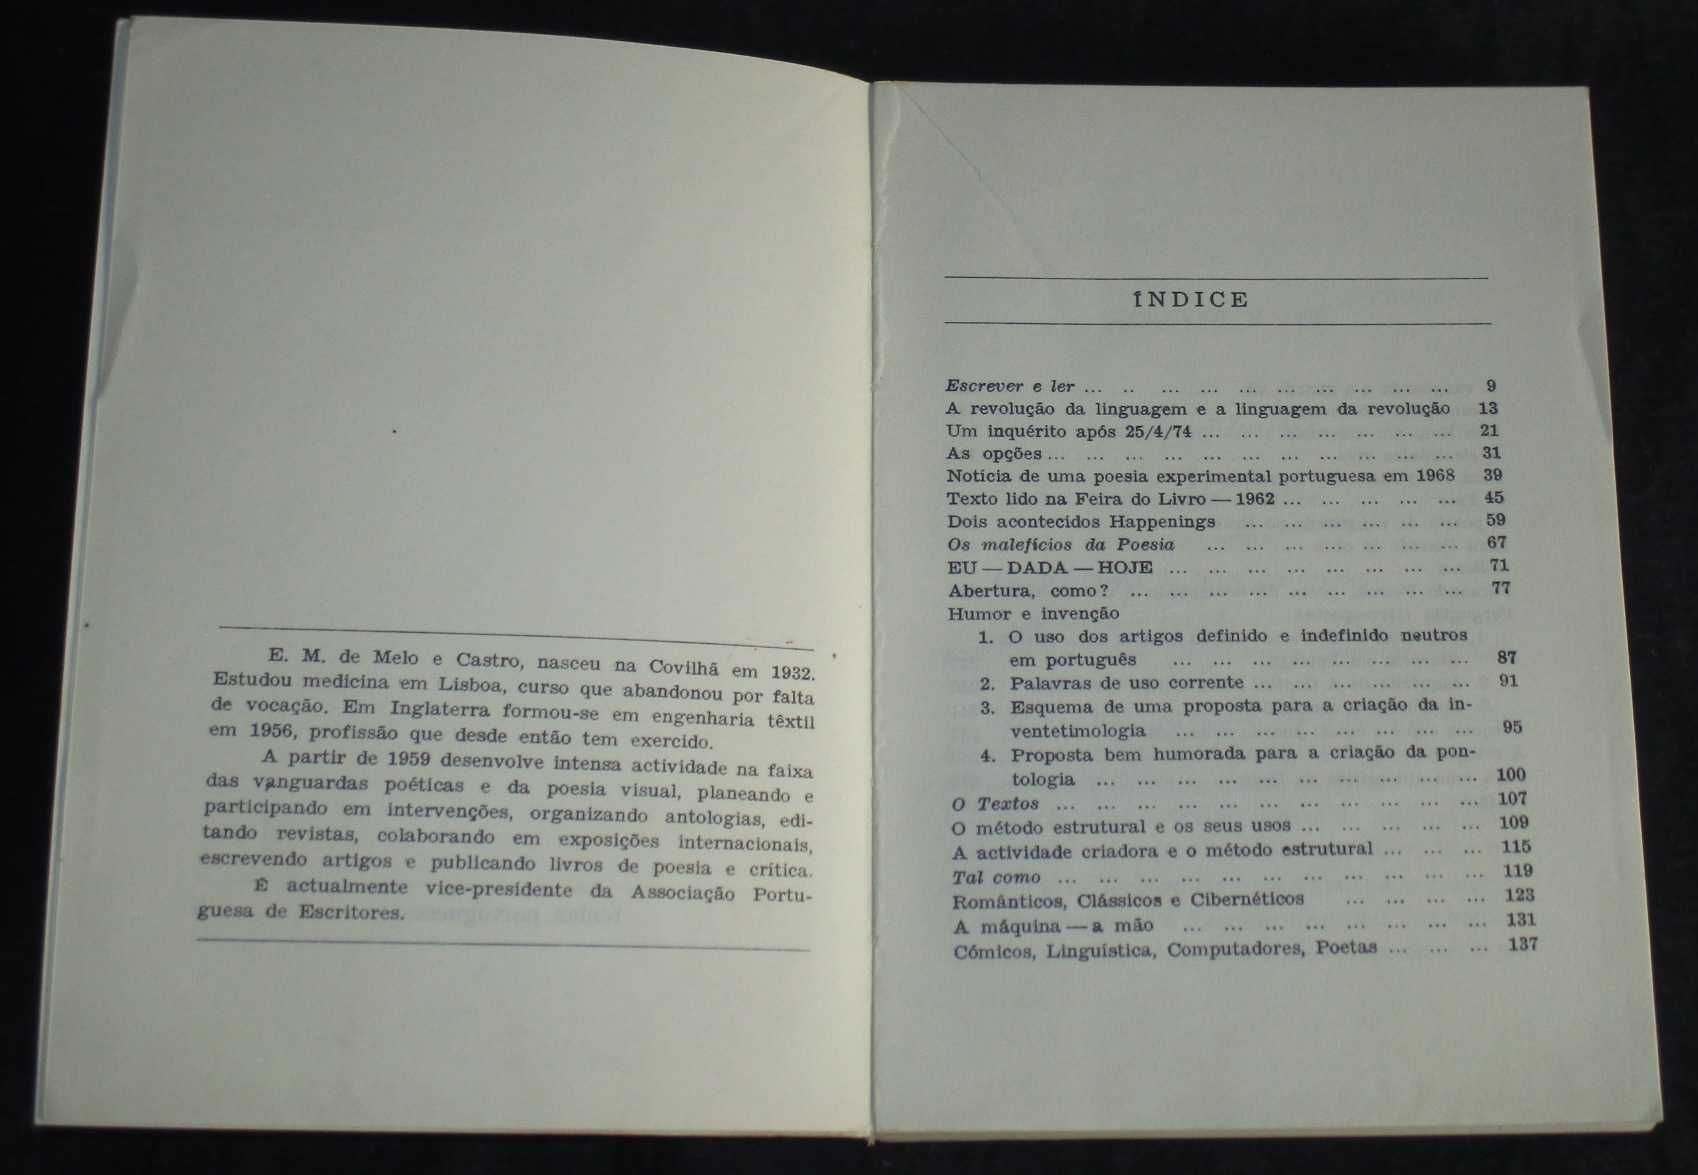 Livro In-Novar E. M. de Melo e Castro 1ª edição 1977